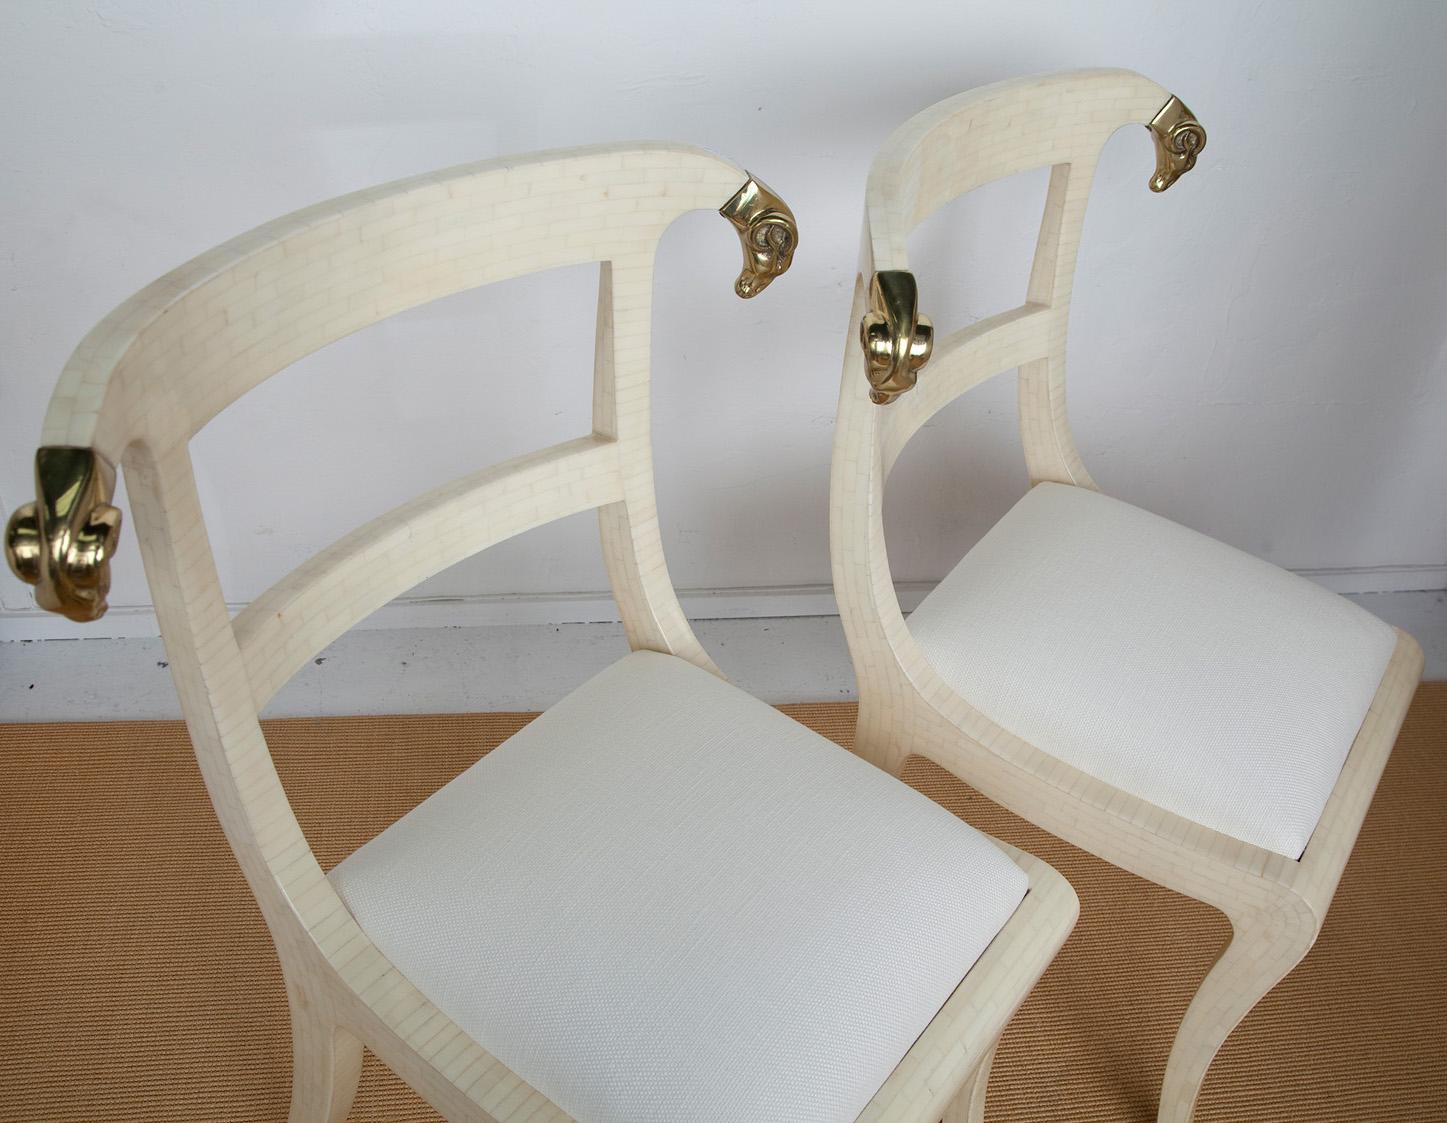 L'os tessellé donne à ces chaises latérales néoclassiques d'Enrique Garces datant des années 1980 et dotées de têtes de béliers en laiton une touche de modernité. Tapissés de lin crème, nous les imaginons comme une paire placée de part et d'autre